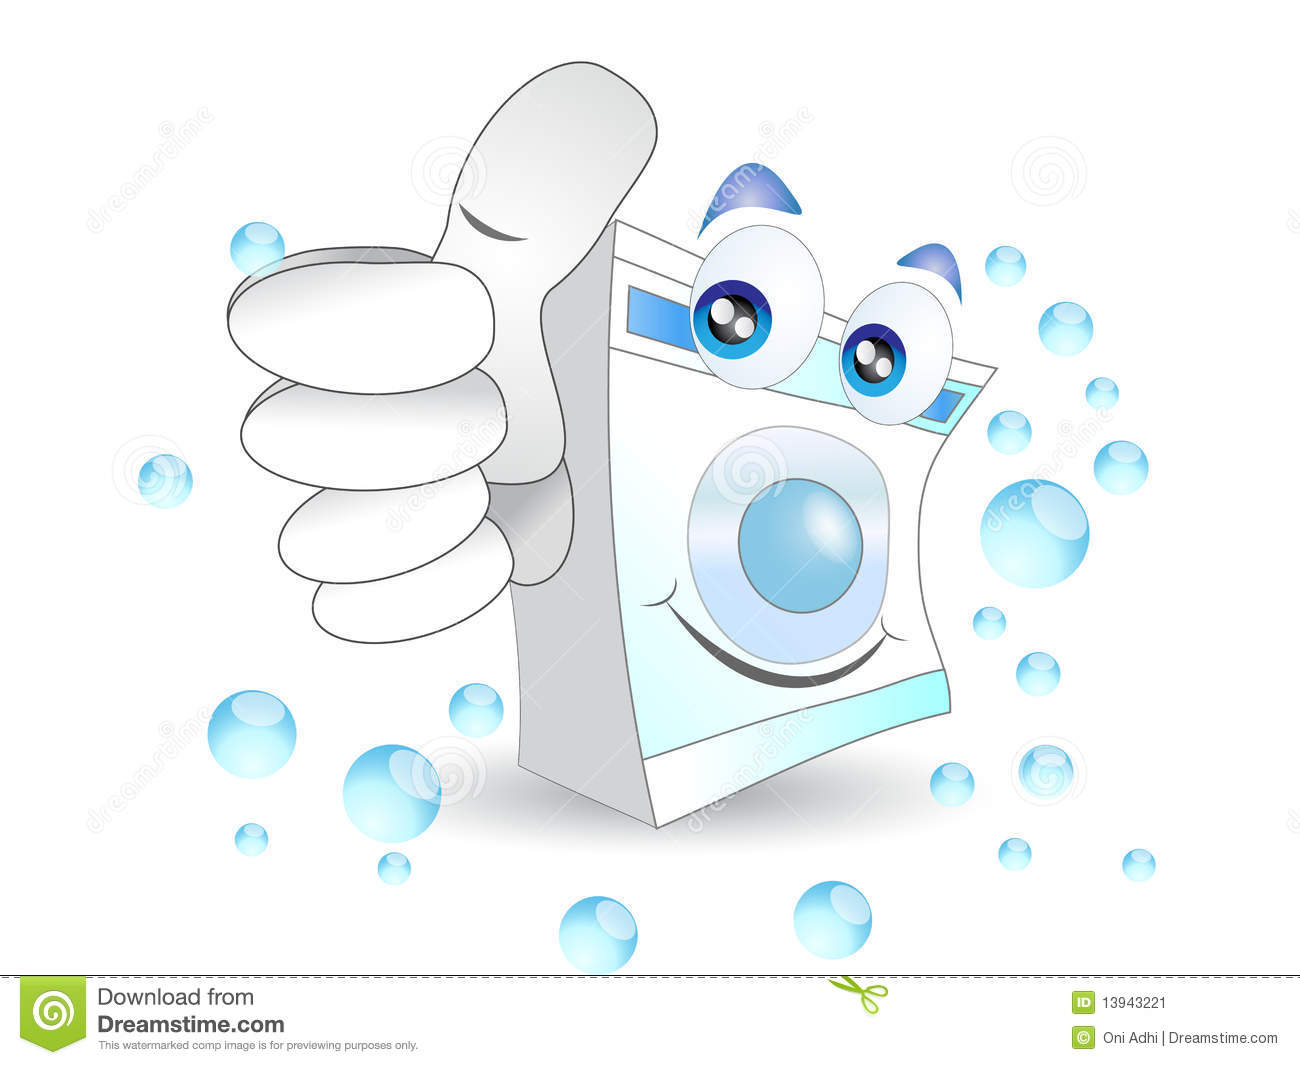 Washing Machine Stock Image   Image  13943221